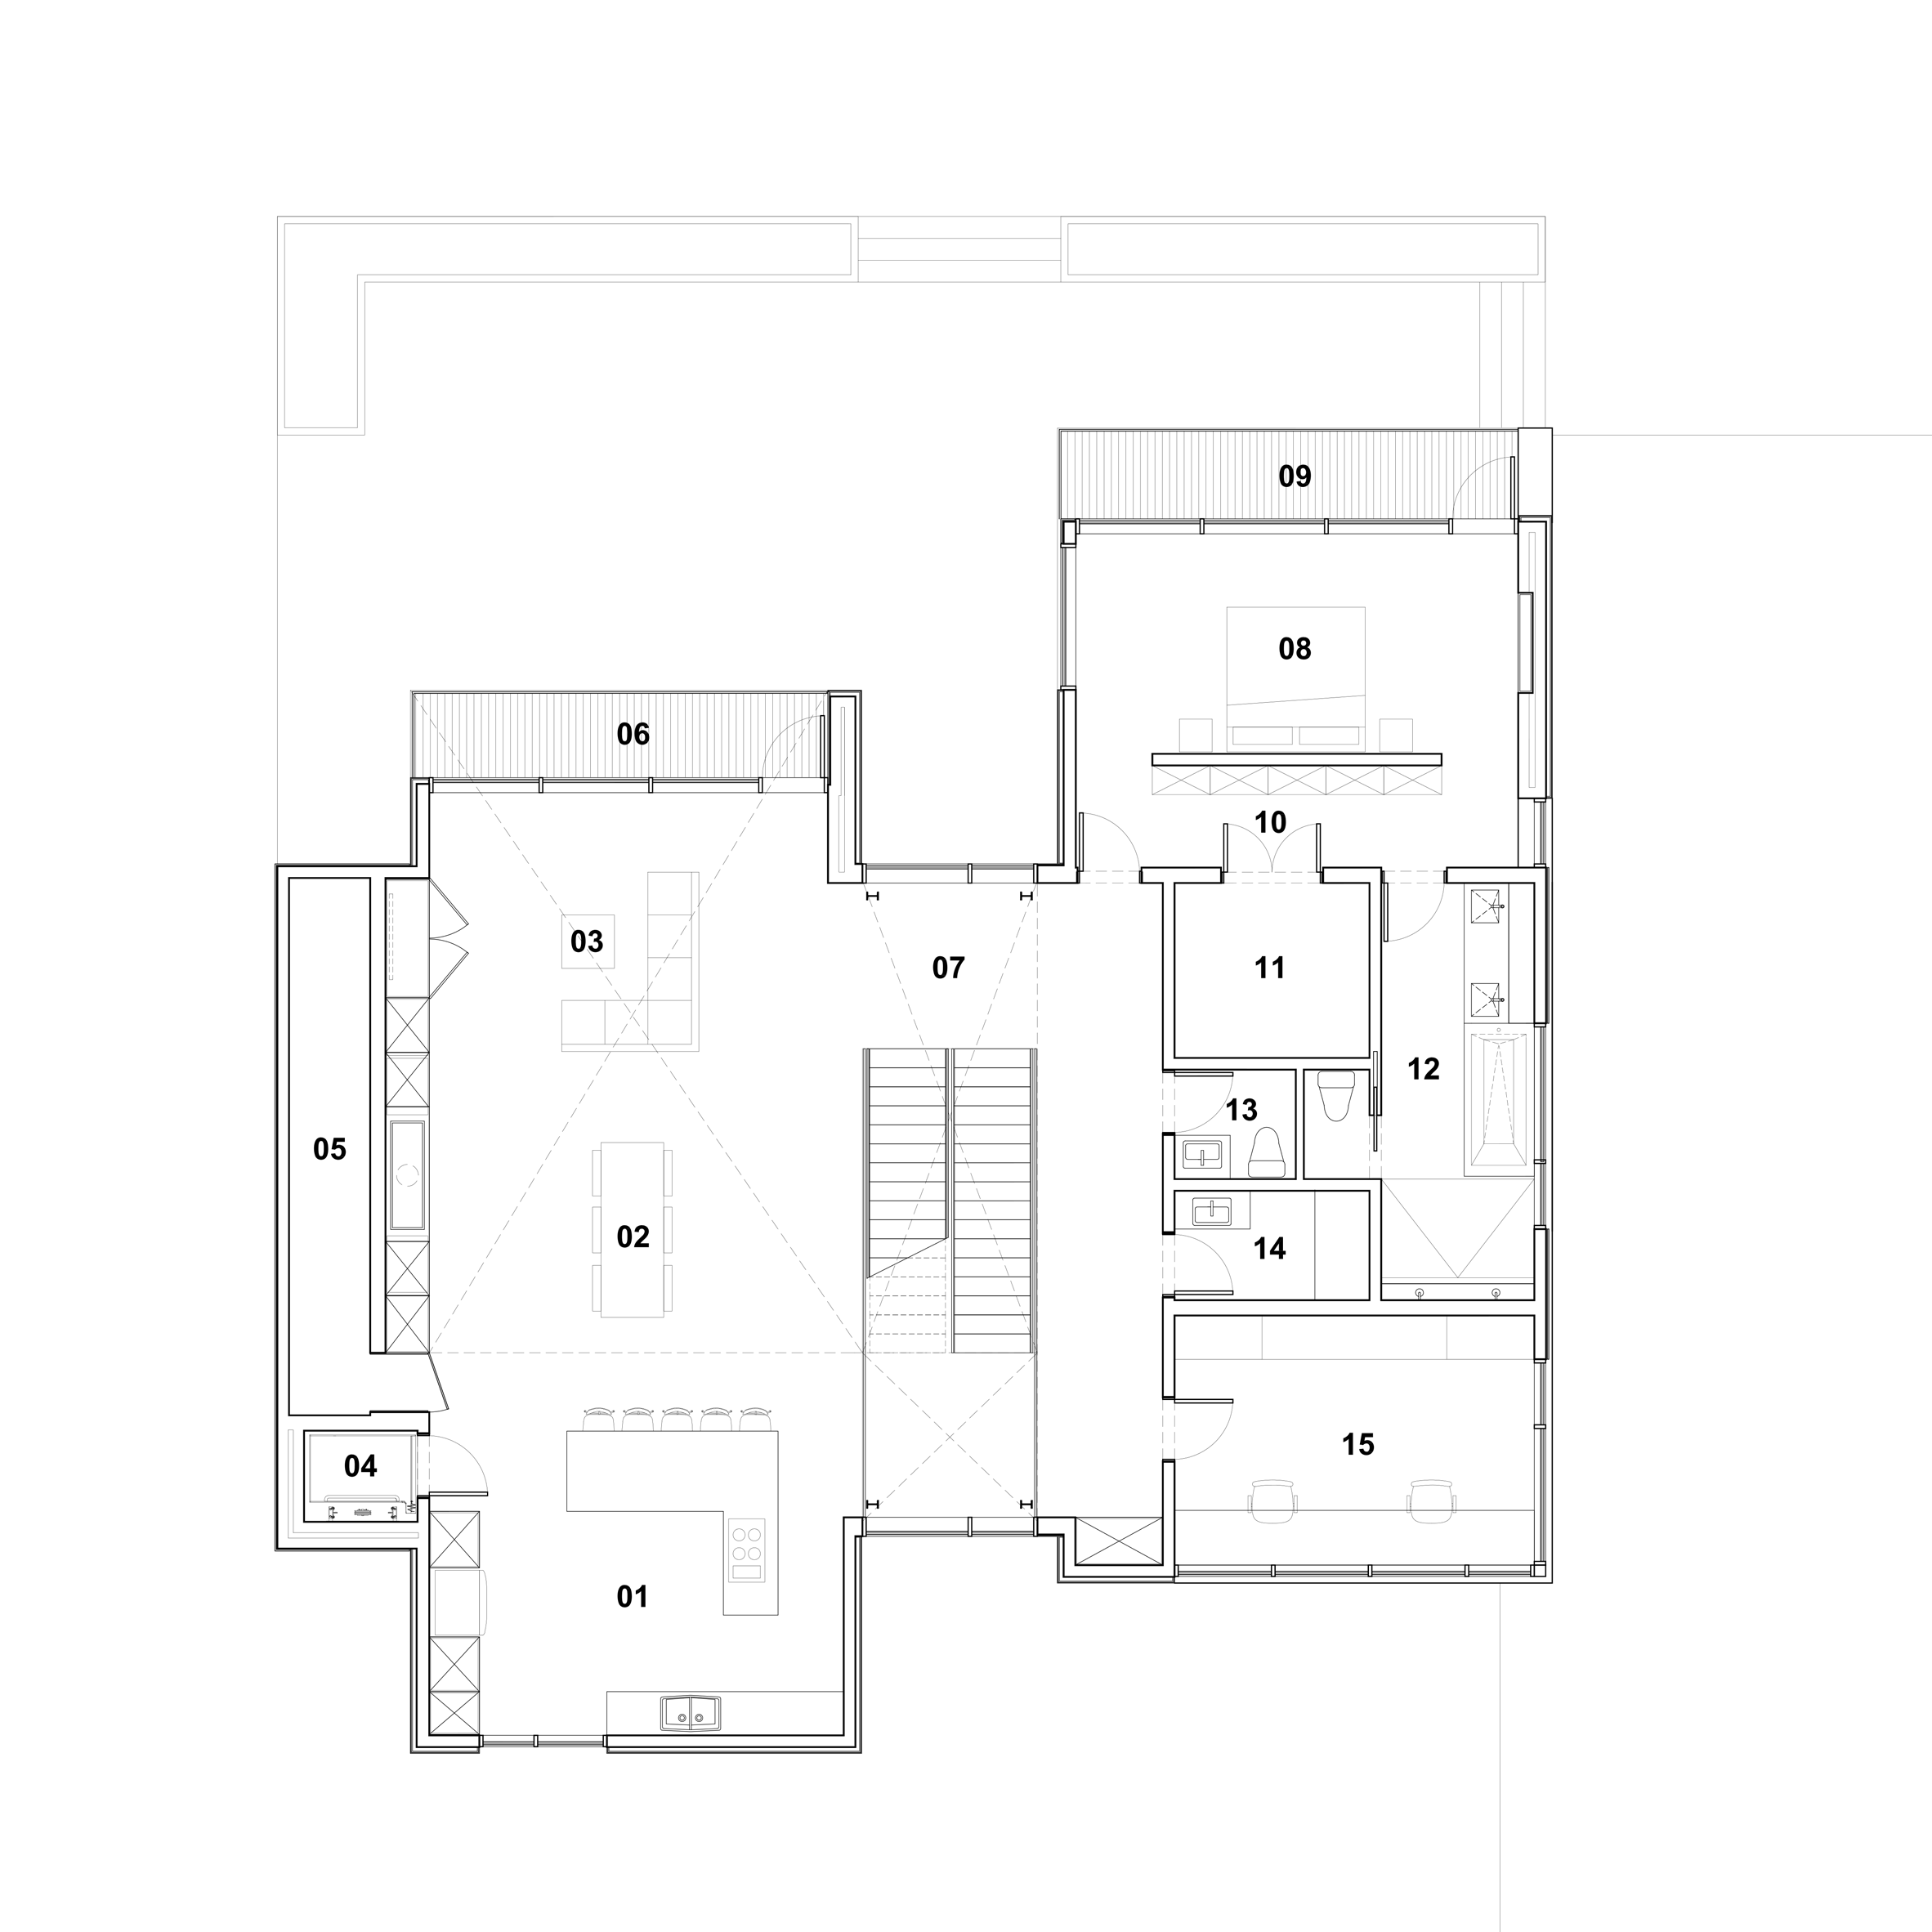 syncline-omar-gandhi_dezeen_2364_first-floor-plan.gif